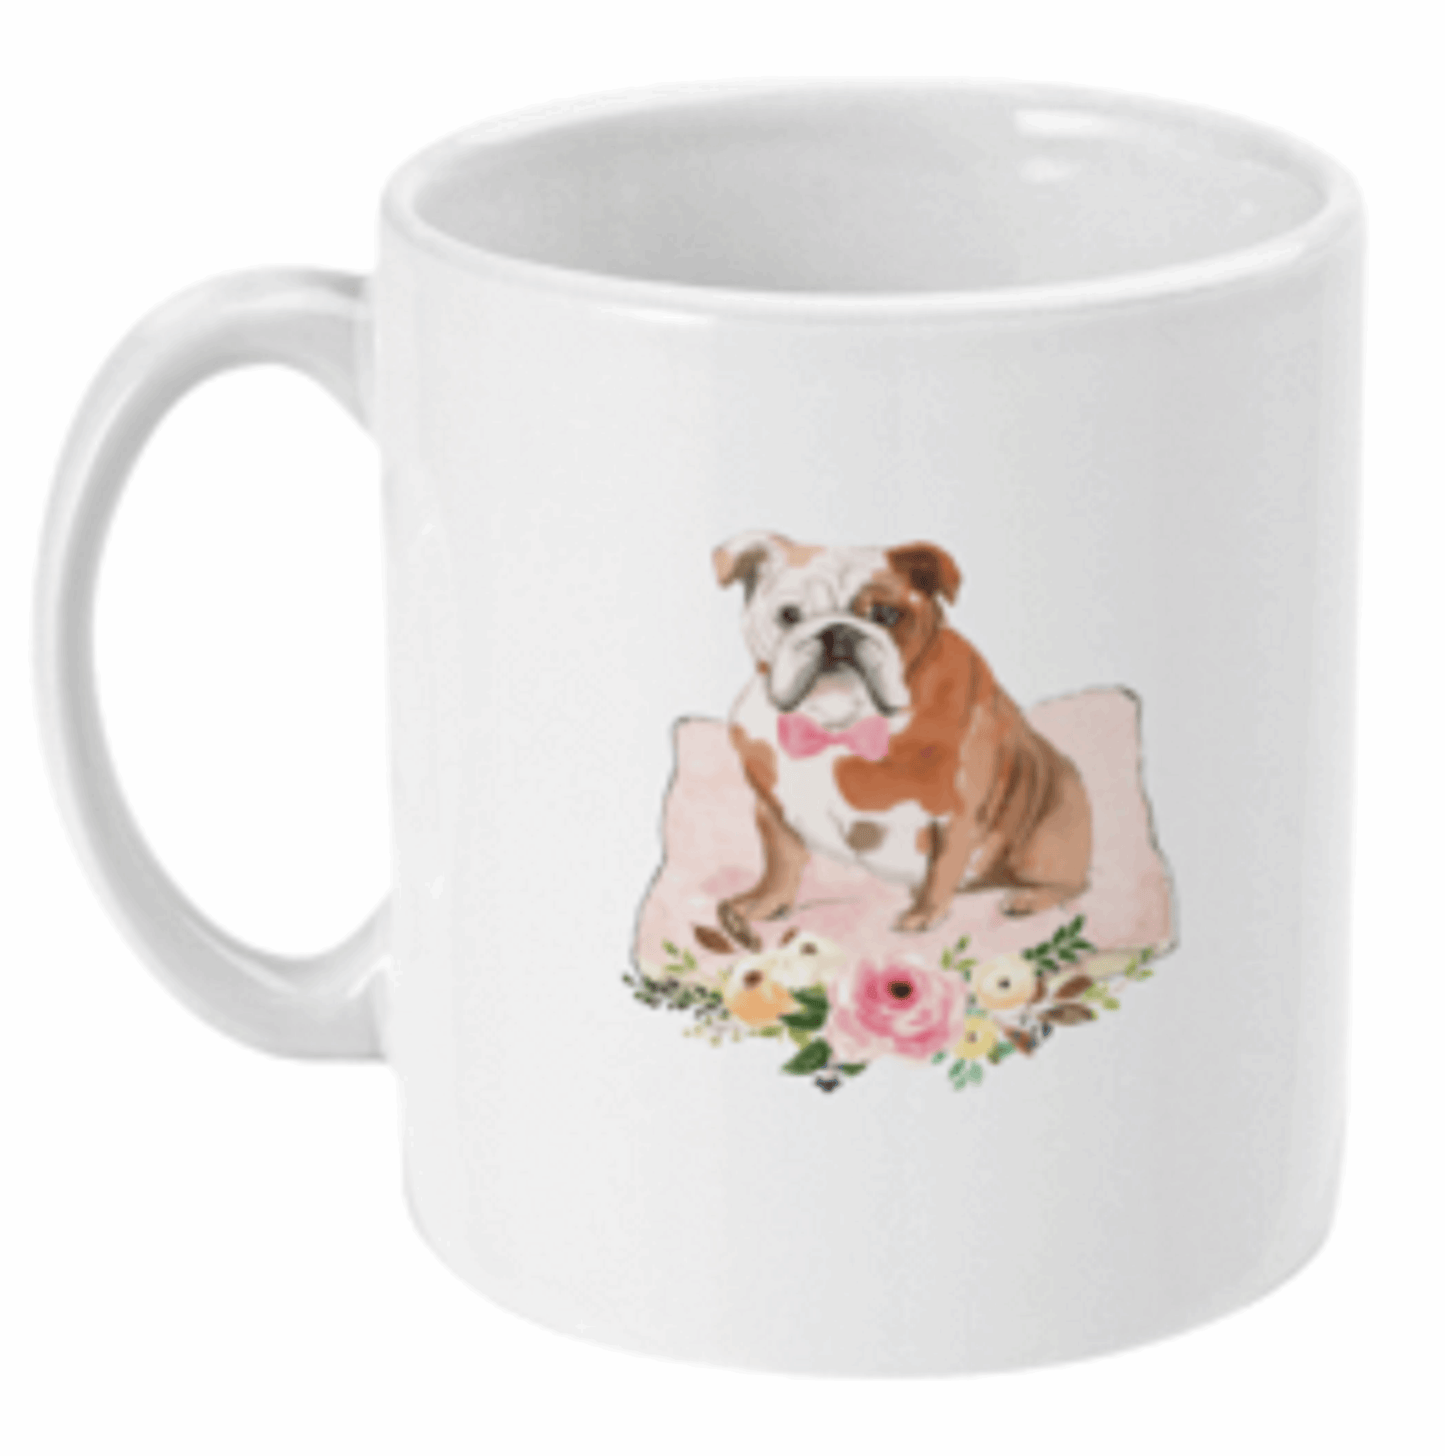  Bulldog on Cushion Coffee or Tea Mug by Free Spirit Accessories sold by Free Spirit Accessories